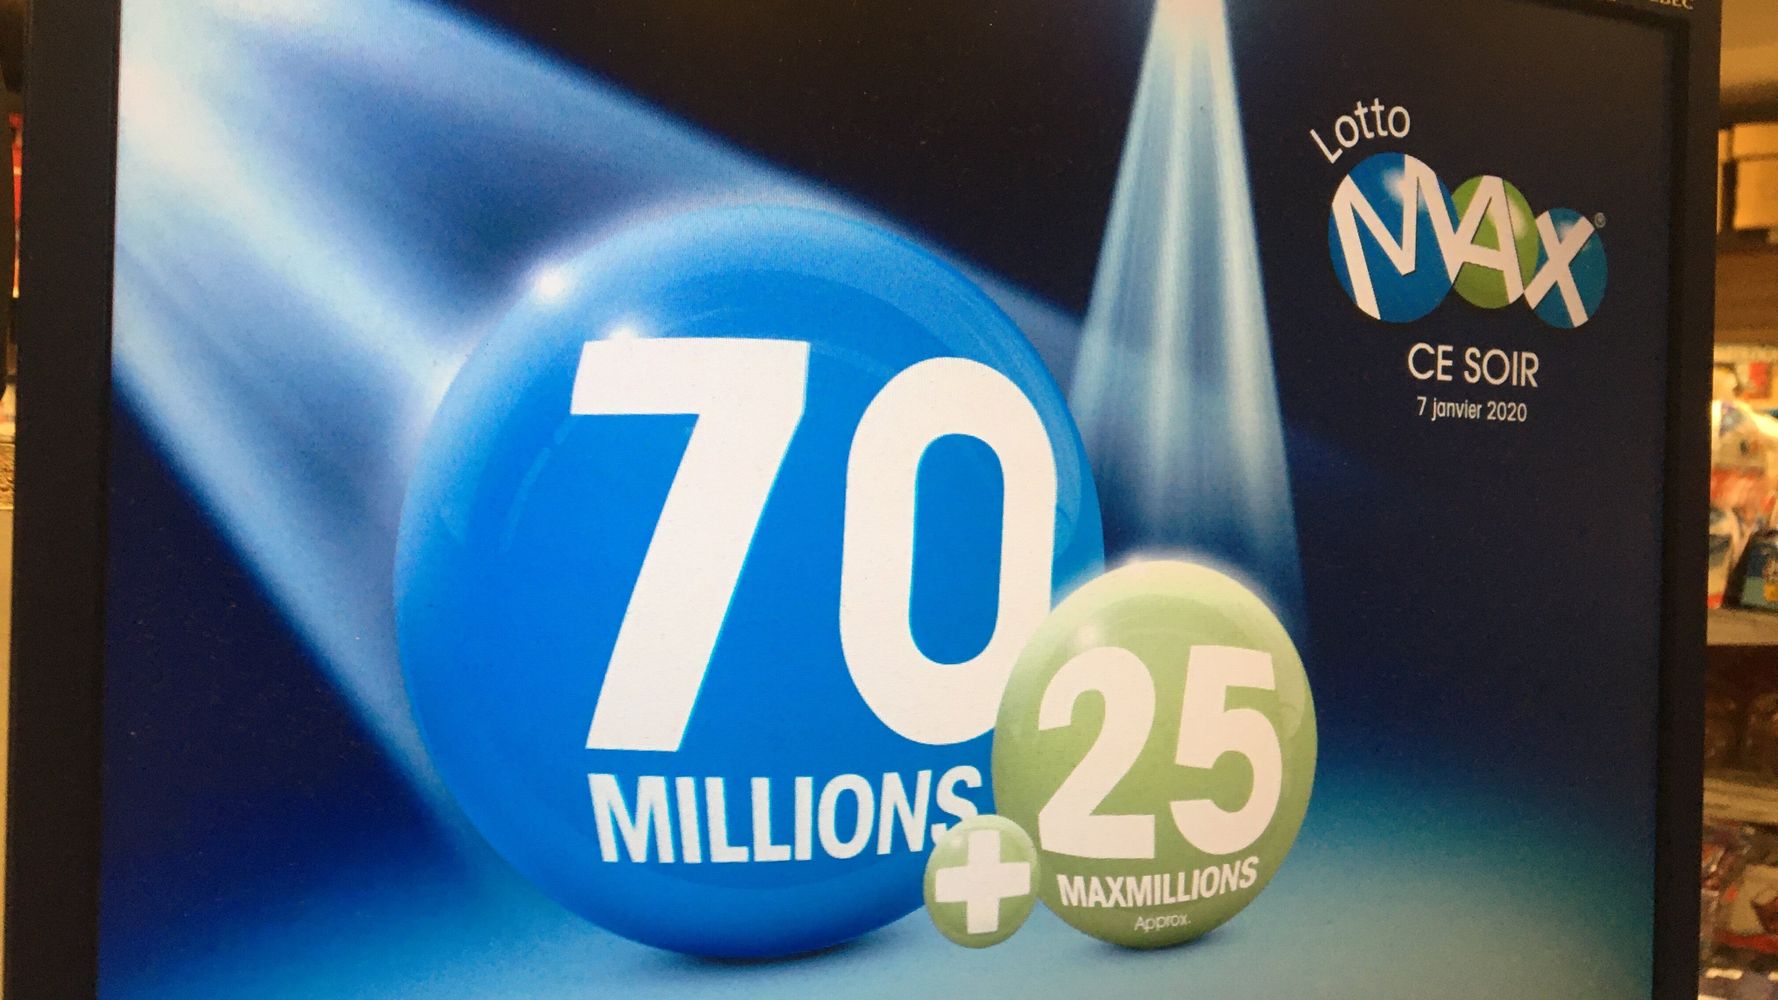 Lotto Max le tirage du gros lot record de 70 millions de retour